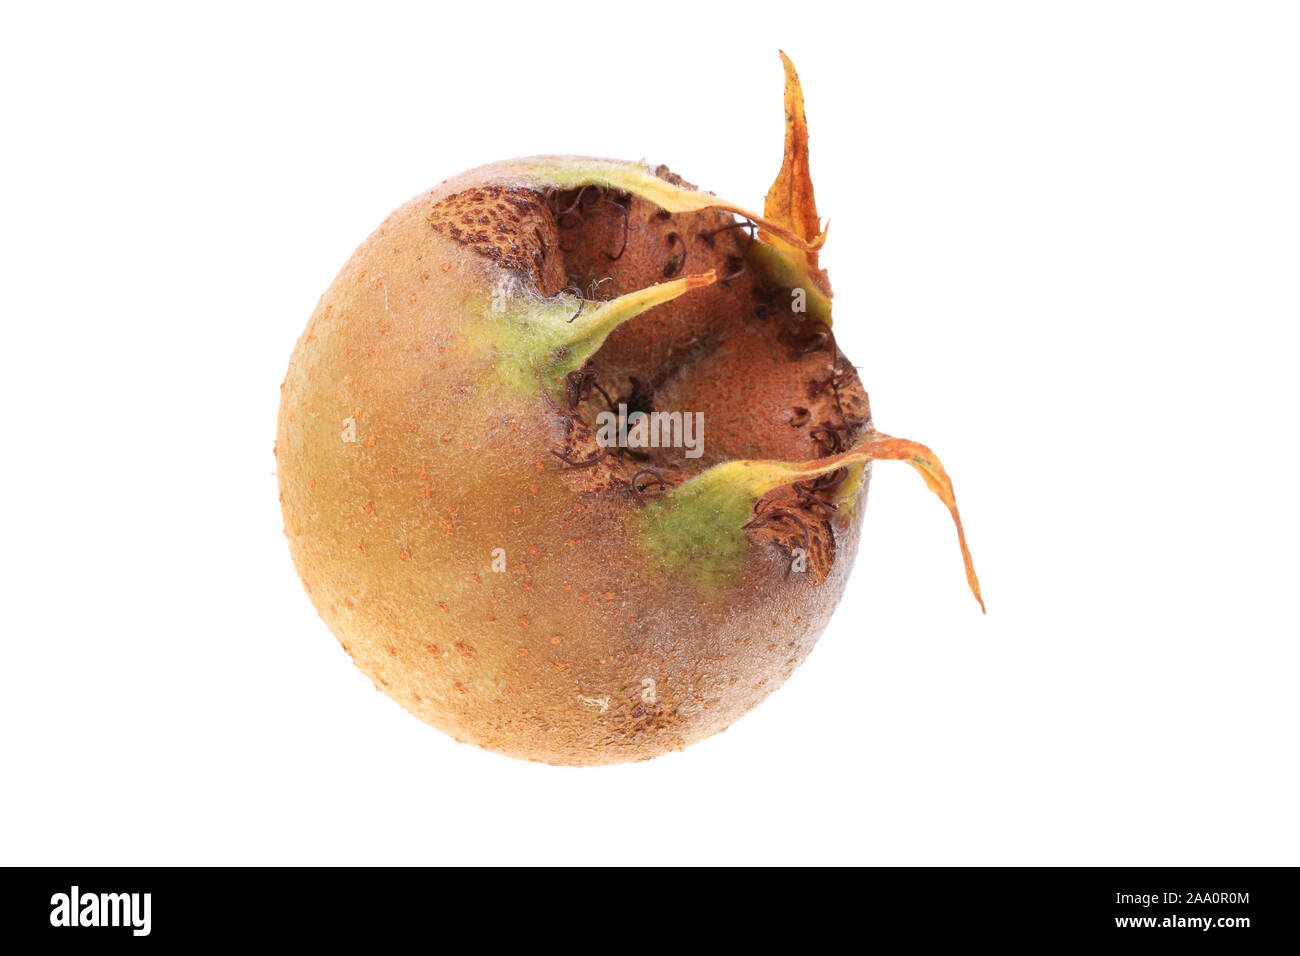 Echte Mispel oder Deutsche Mispel (Mespilus germanica), Frucht Stock Photo